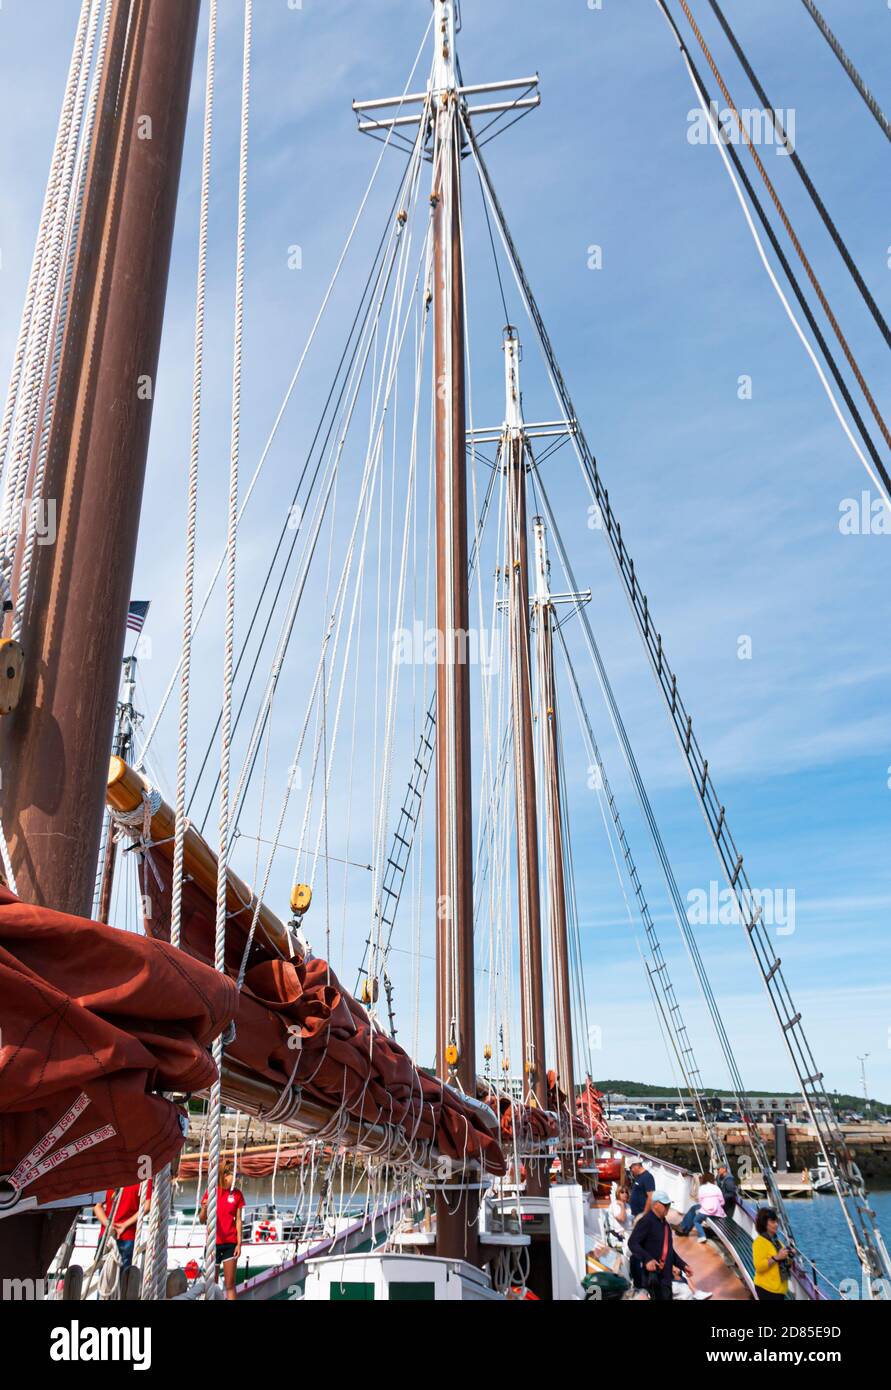 Camden, Maine, USA - 29. Juli 2017: Blick auf die vier Masttürme eines Segelbootes, das Touristen auf eine Tour durch die Gewässer von Maine nimmt. Stockfoto